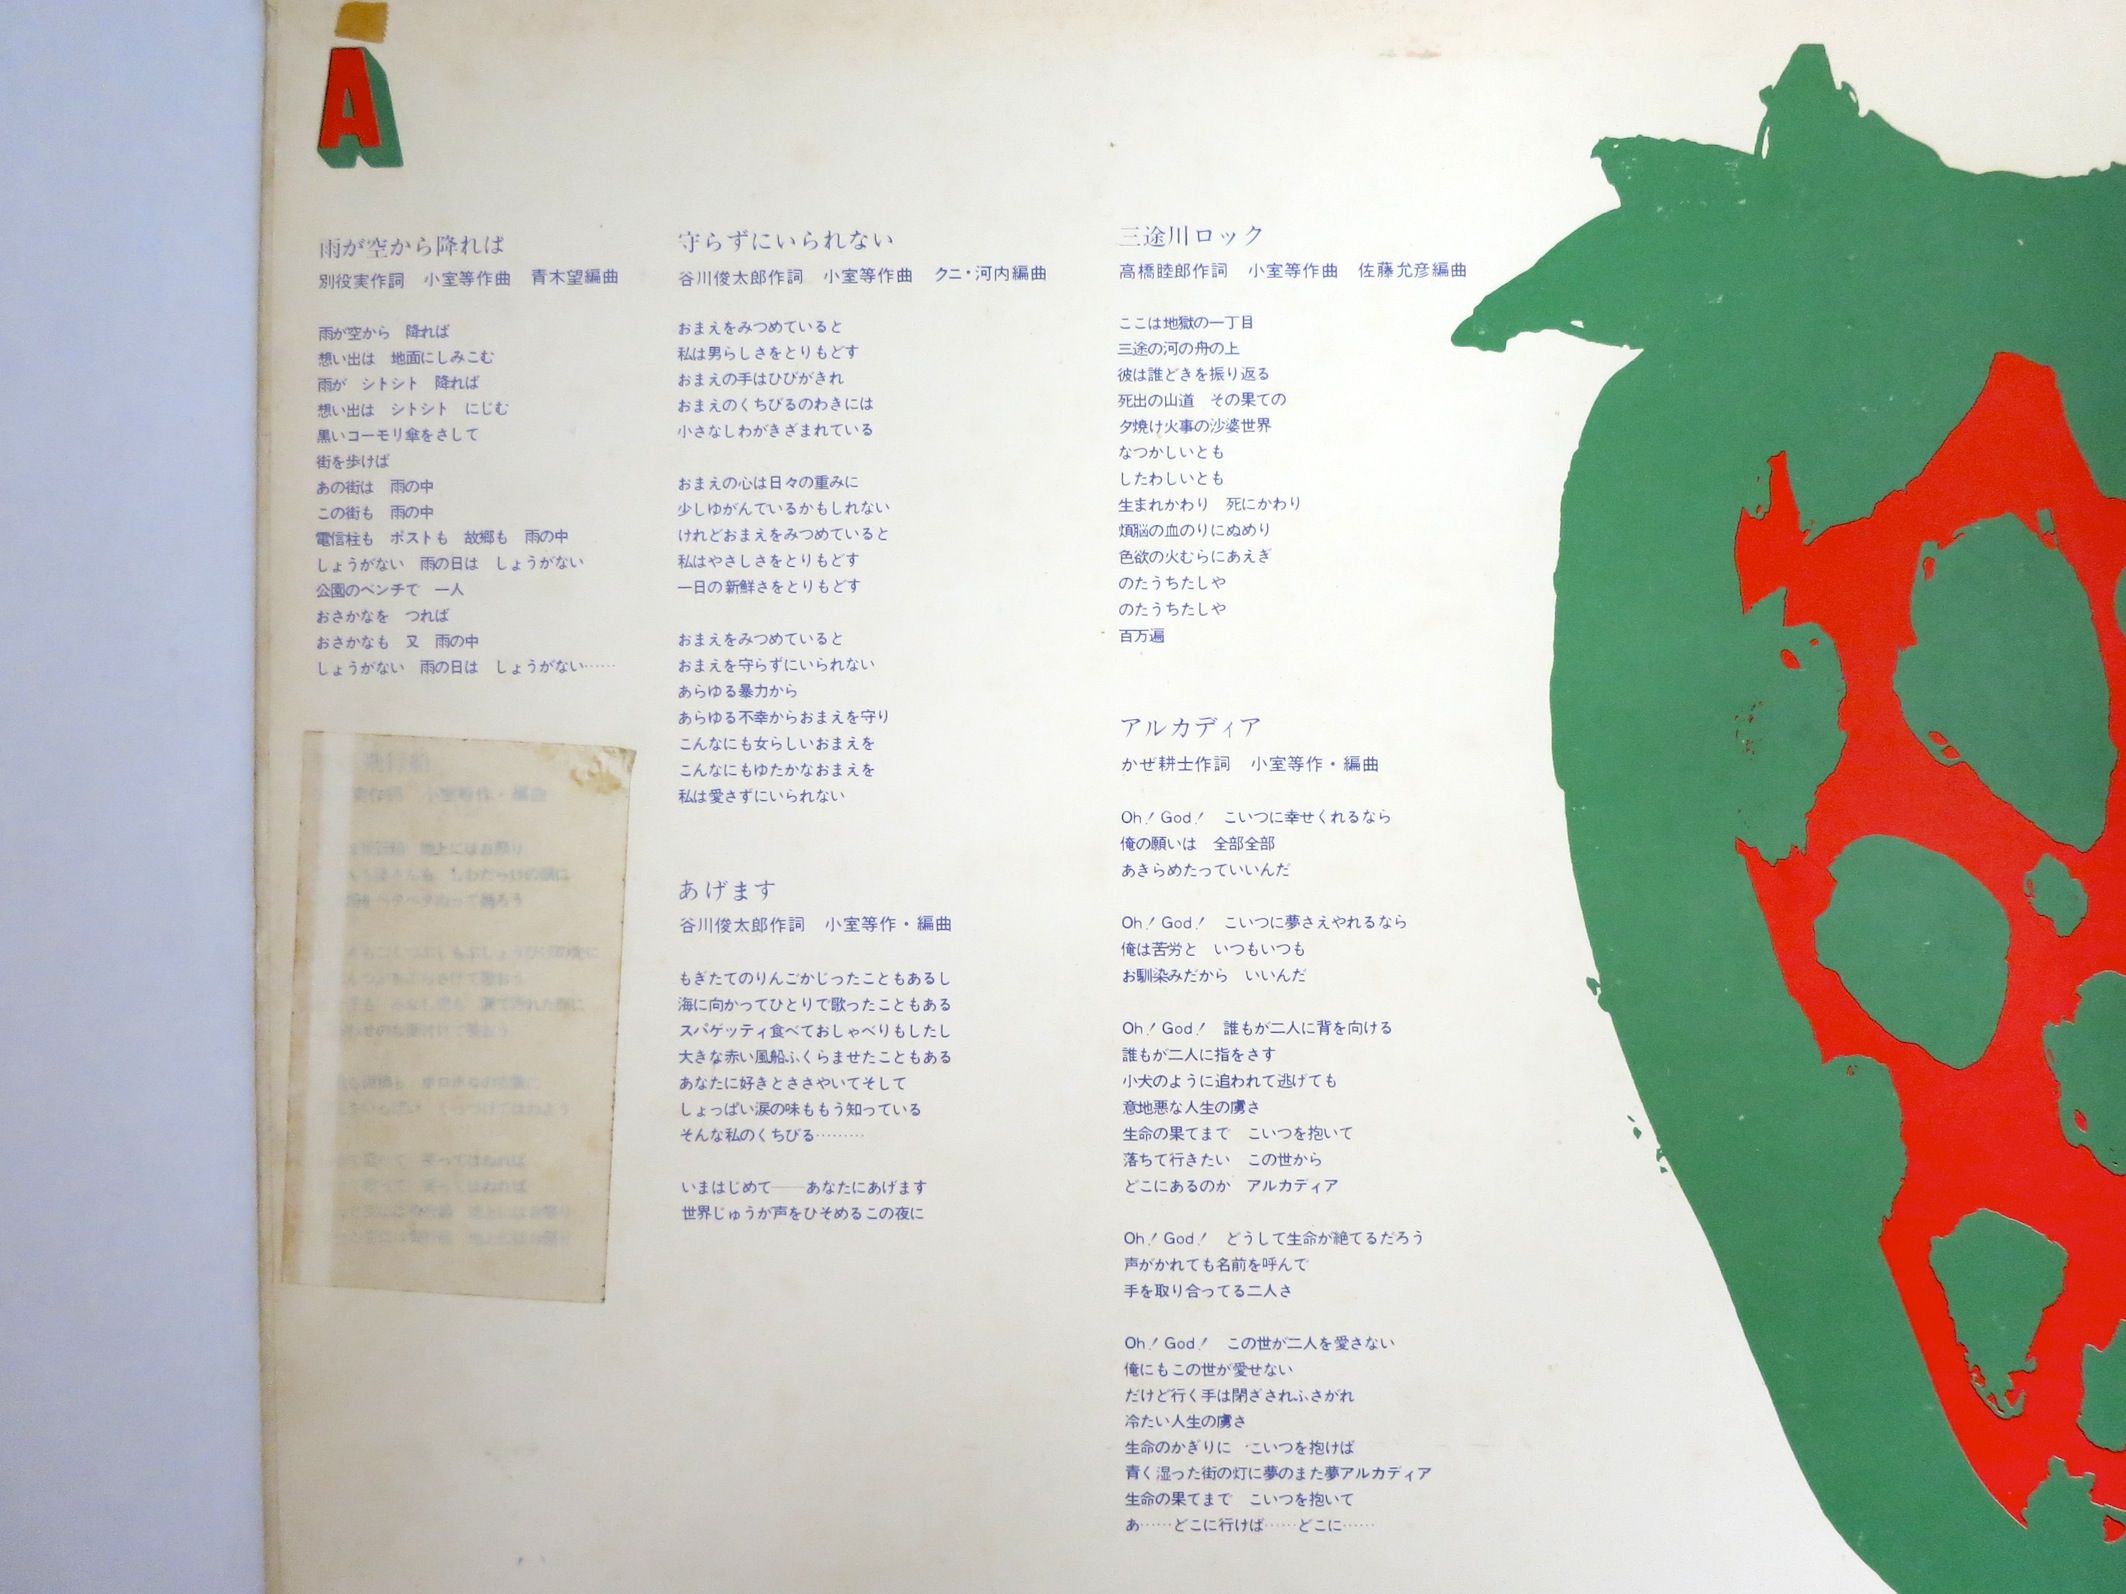 西岡恭蔵 05 1972 上半期 すりいこおど 1970年代周辺の日本のフォーク ロック 楽天ブログ